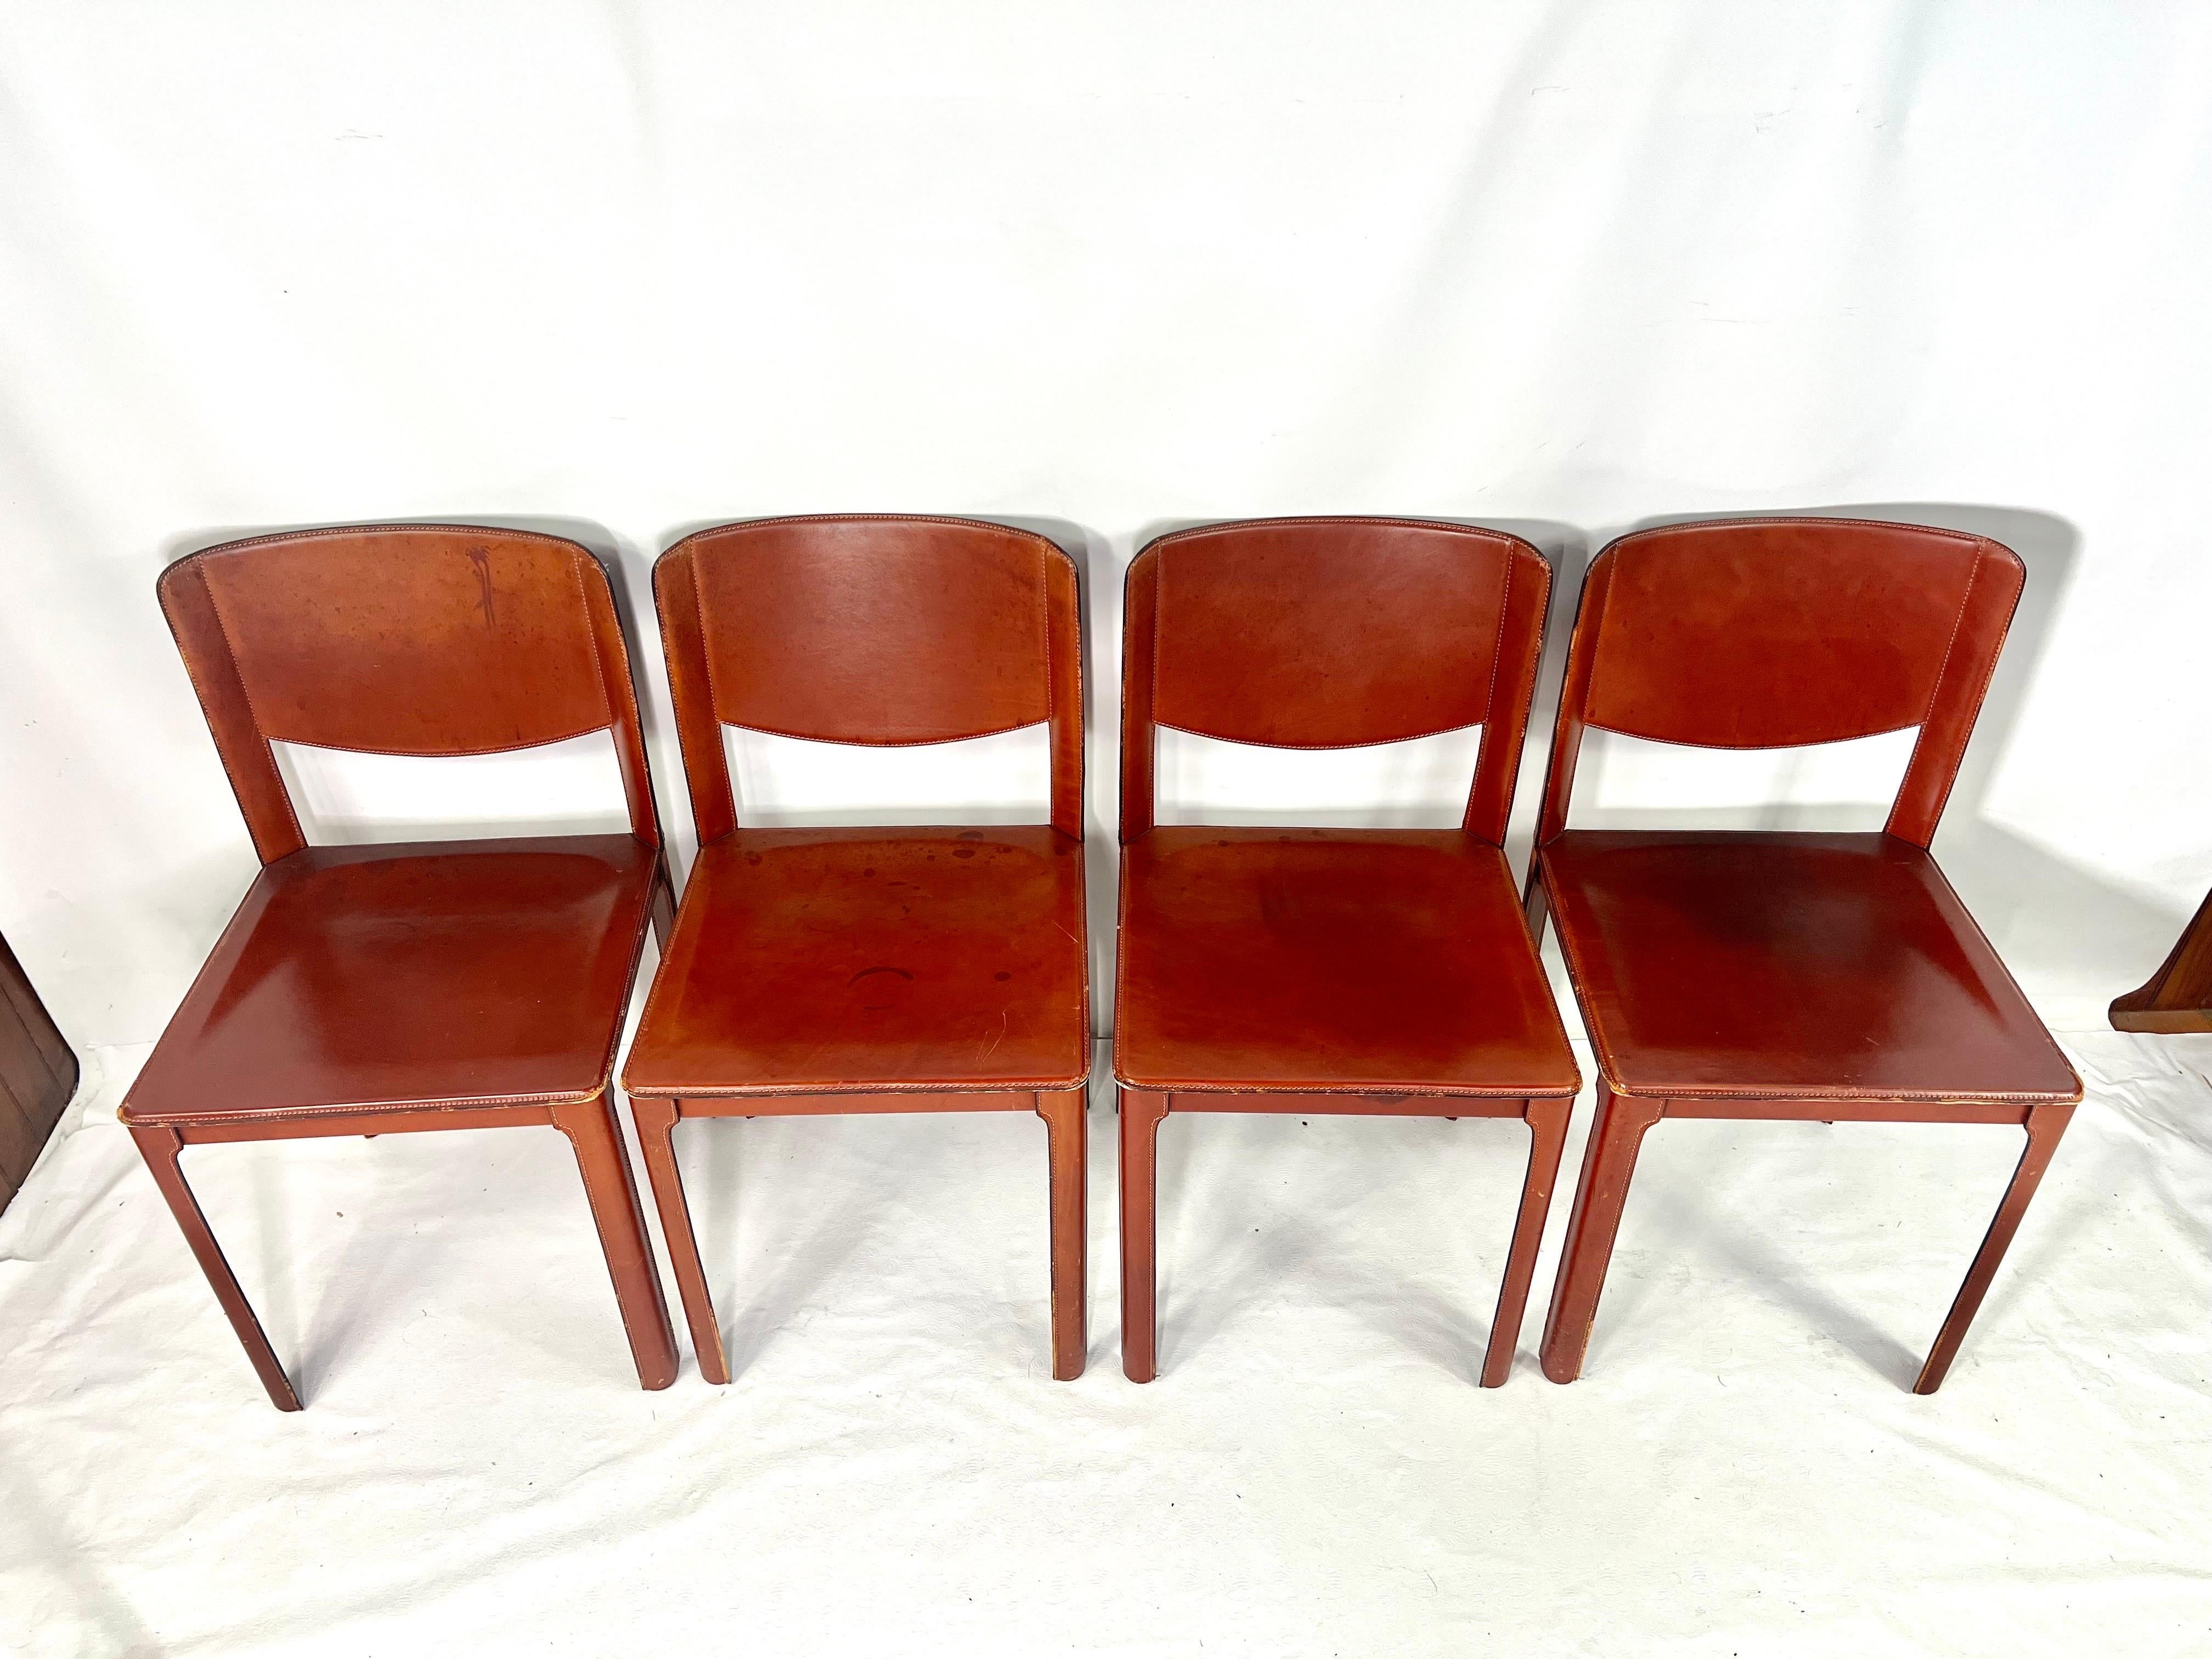 Il s'agit d'un très bel ensemble de quatre chaises en rouge Oxford réalisées par Matteo Grassi. Les chaises ont une très belle patine d'ancienneté.